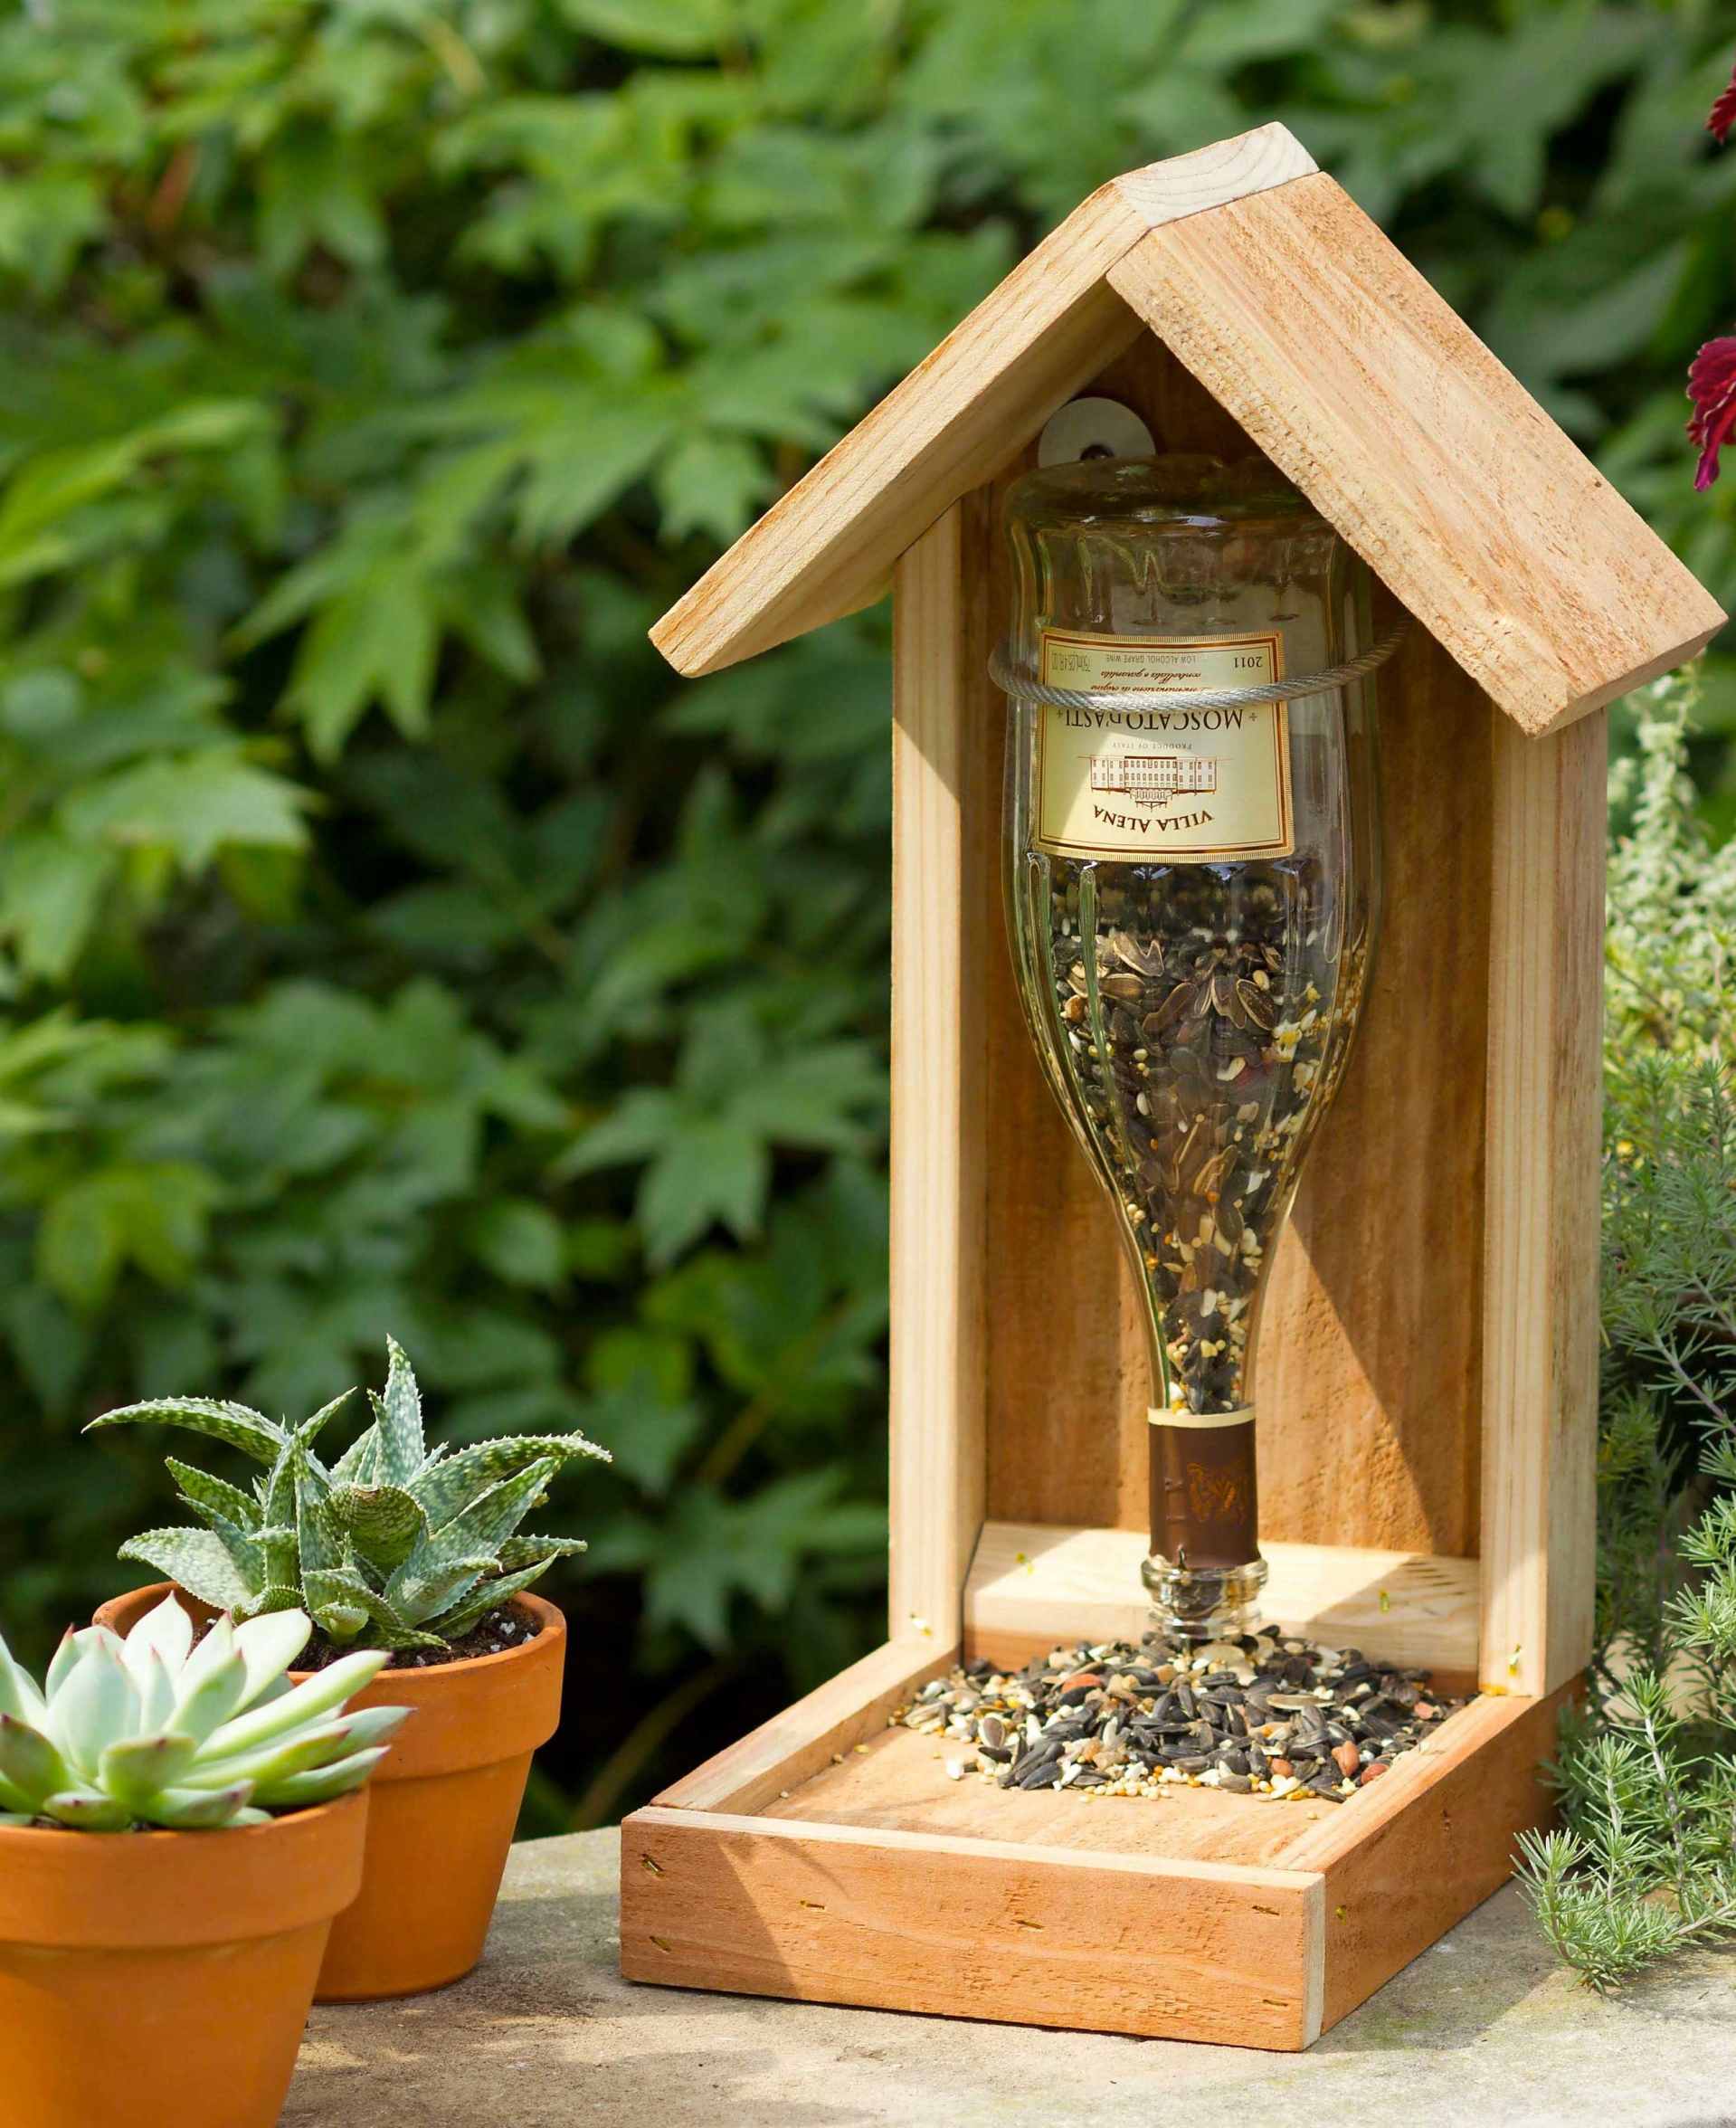 Úp ngược chai xuống, cố định chai vào một ngôi nhà gỗ tự chế là những người làm vườn đã có được một dụng cụ cho chim ăn một cách duyên dáng và đẹp mắt trong khu vườn rồi đấy!